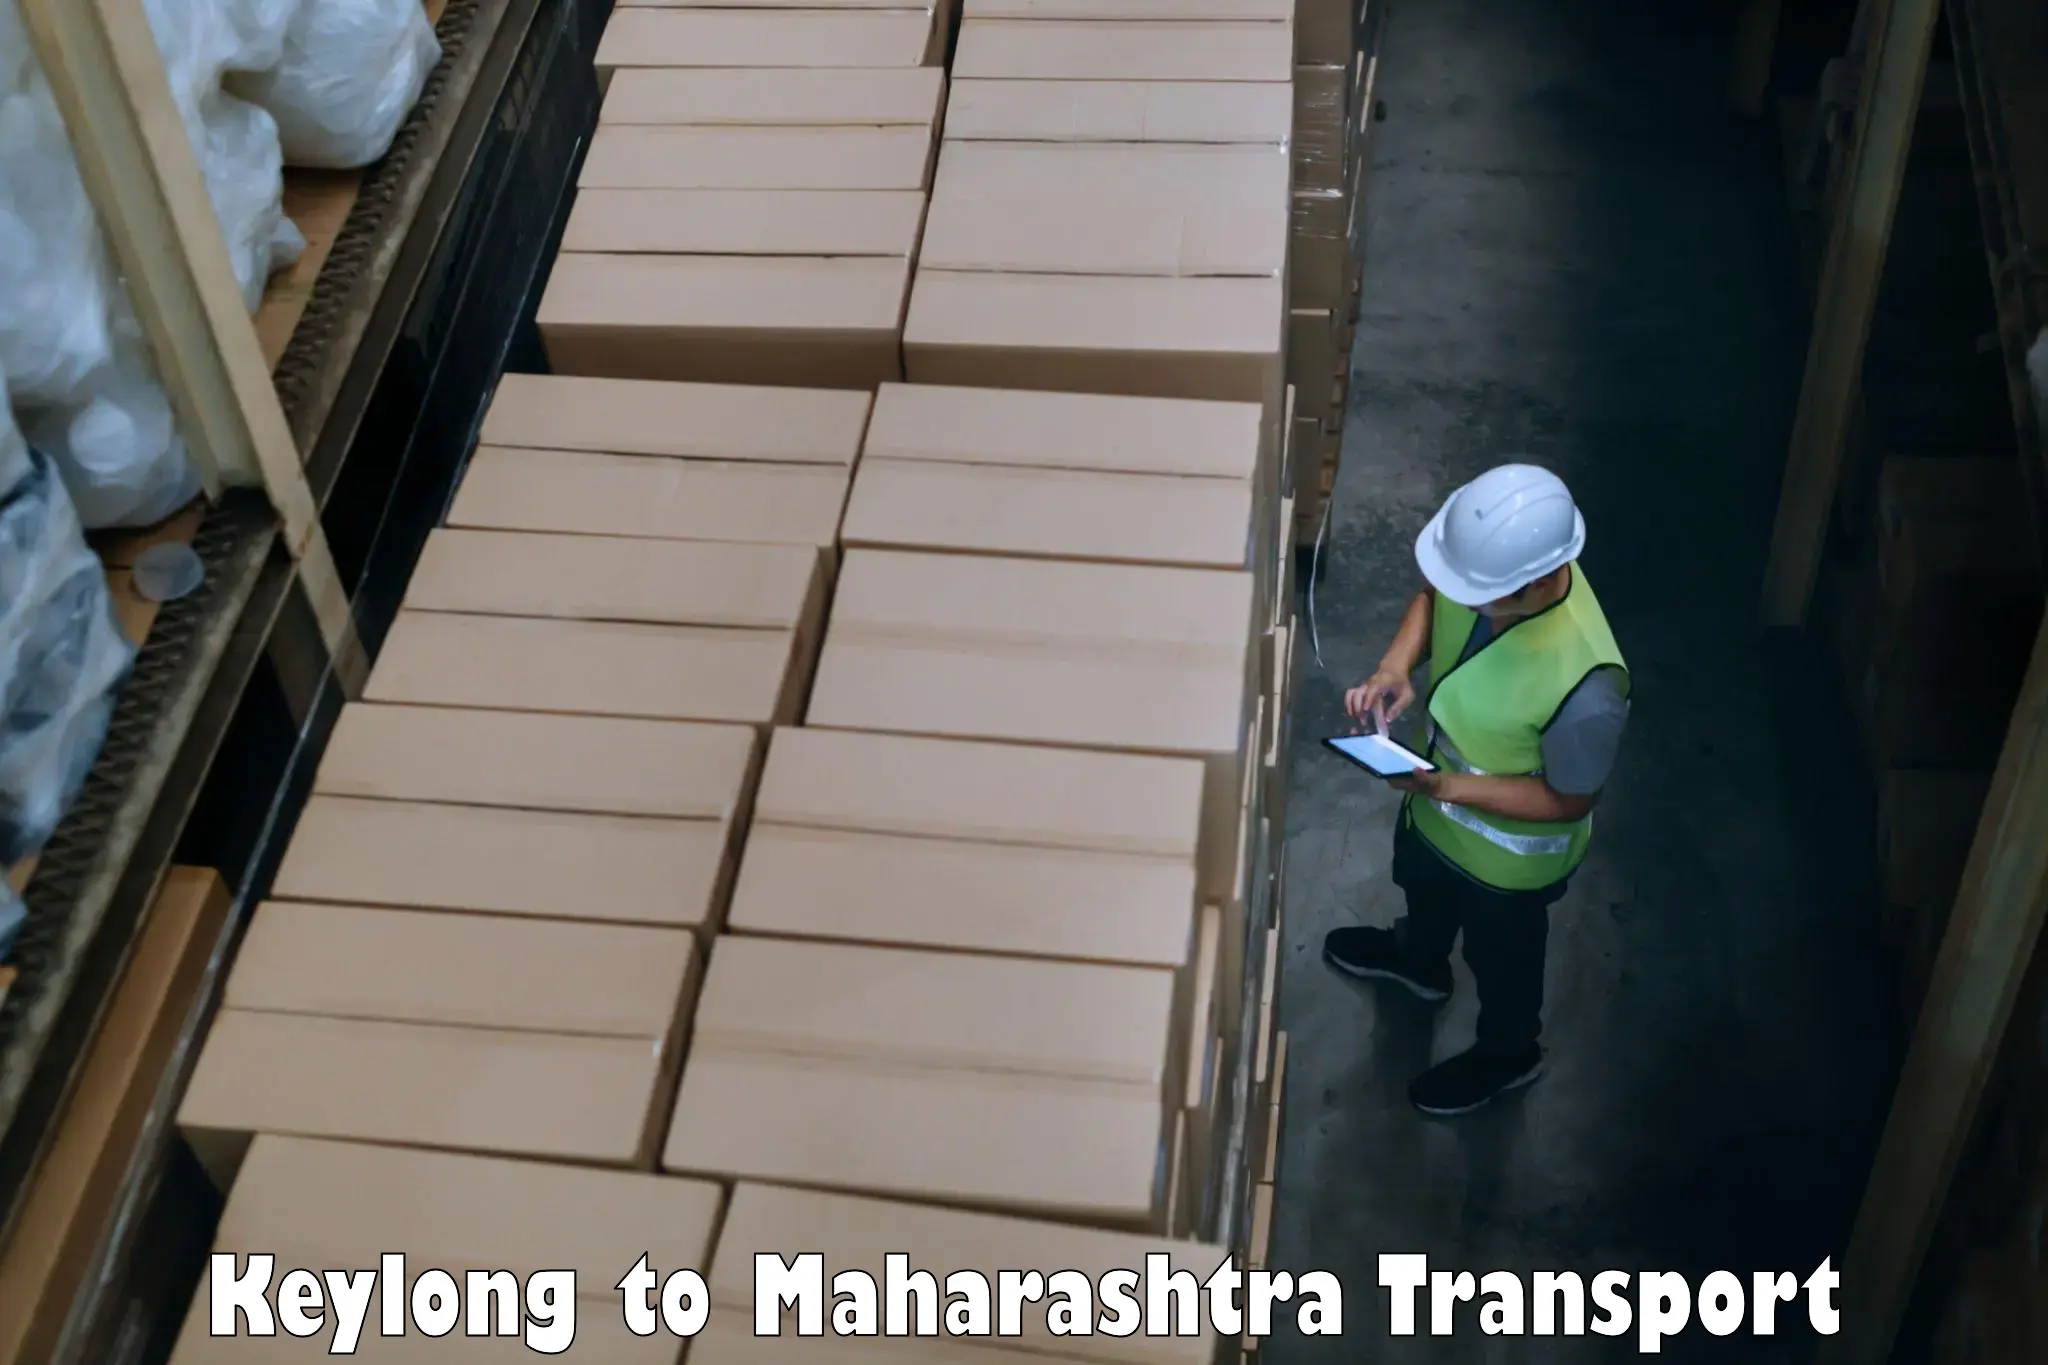 Luggage transport services Keylong to Khandala Pune